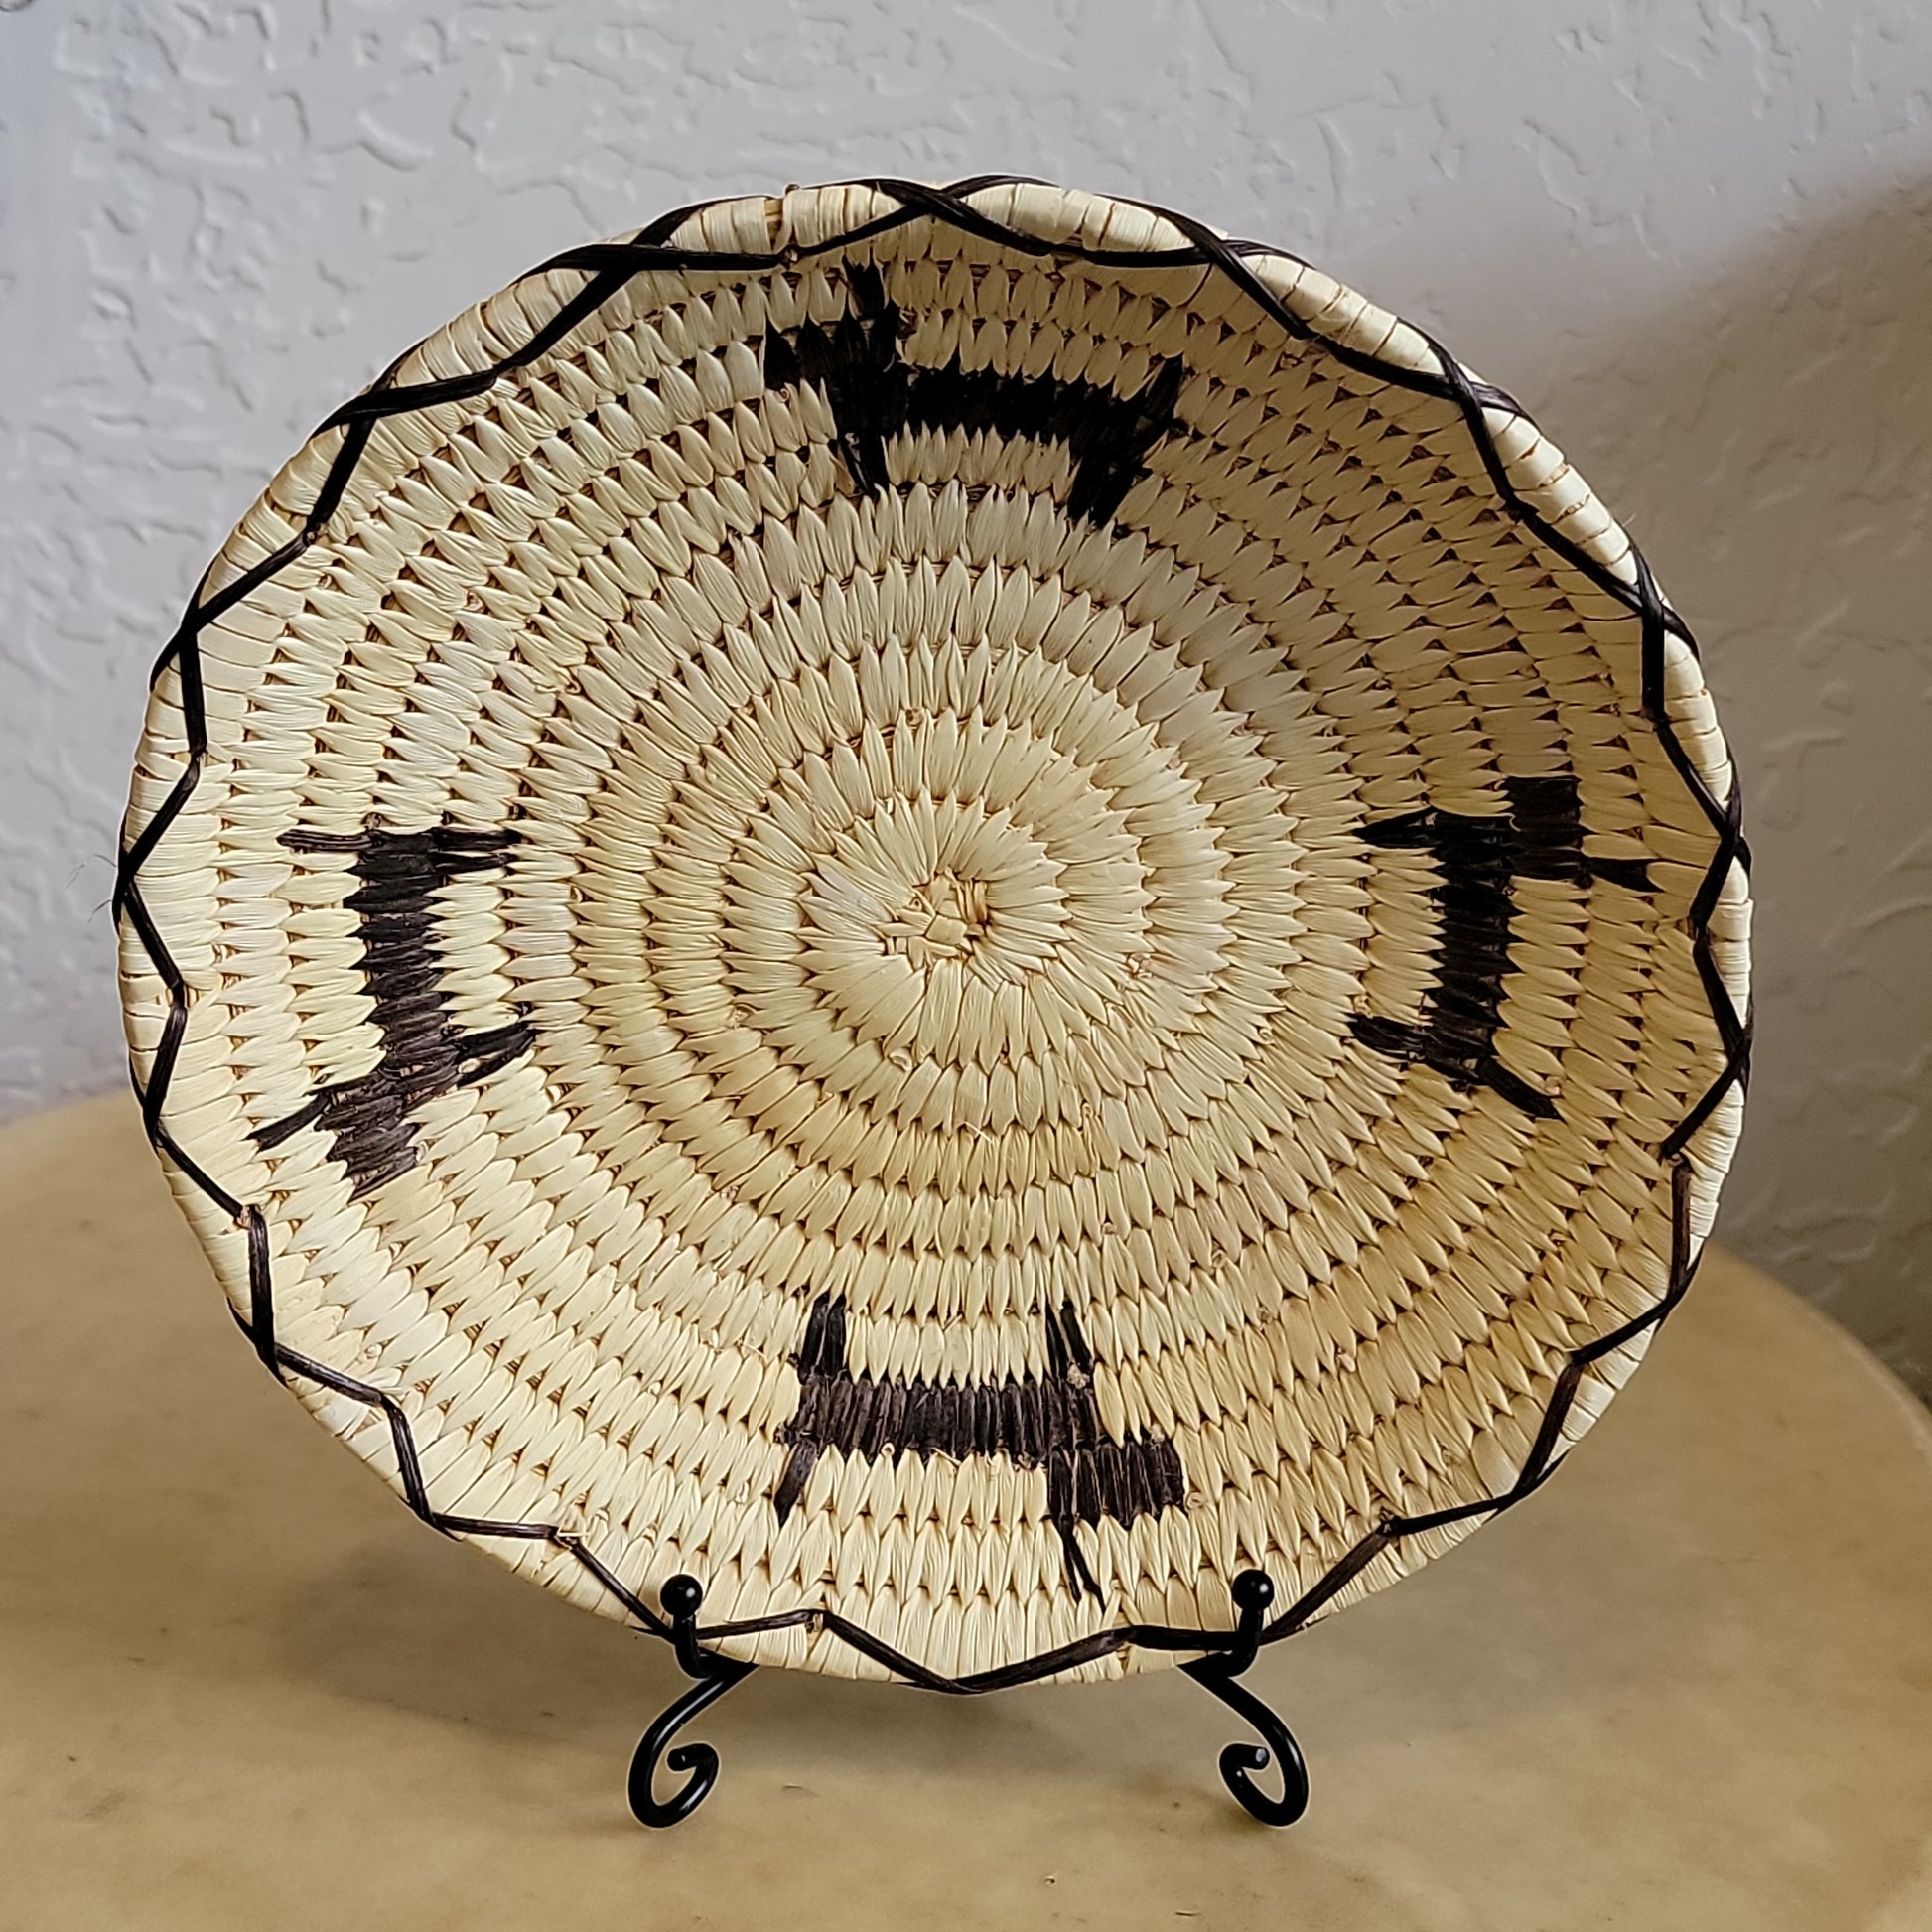 Papago/ Tohono O'Odham Dog Pattern Indian Basket